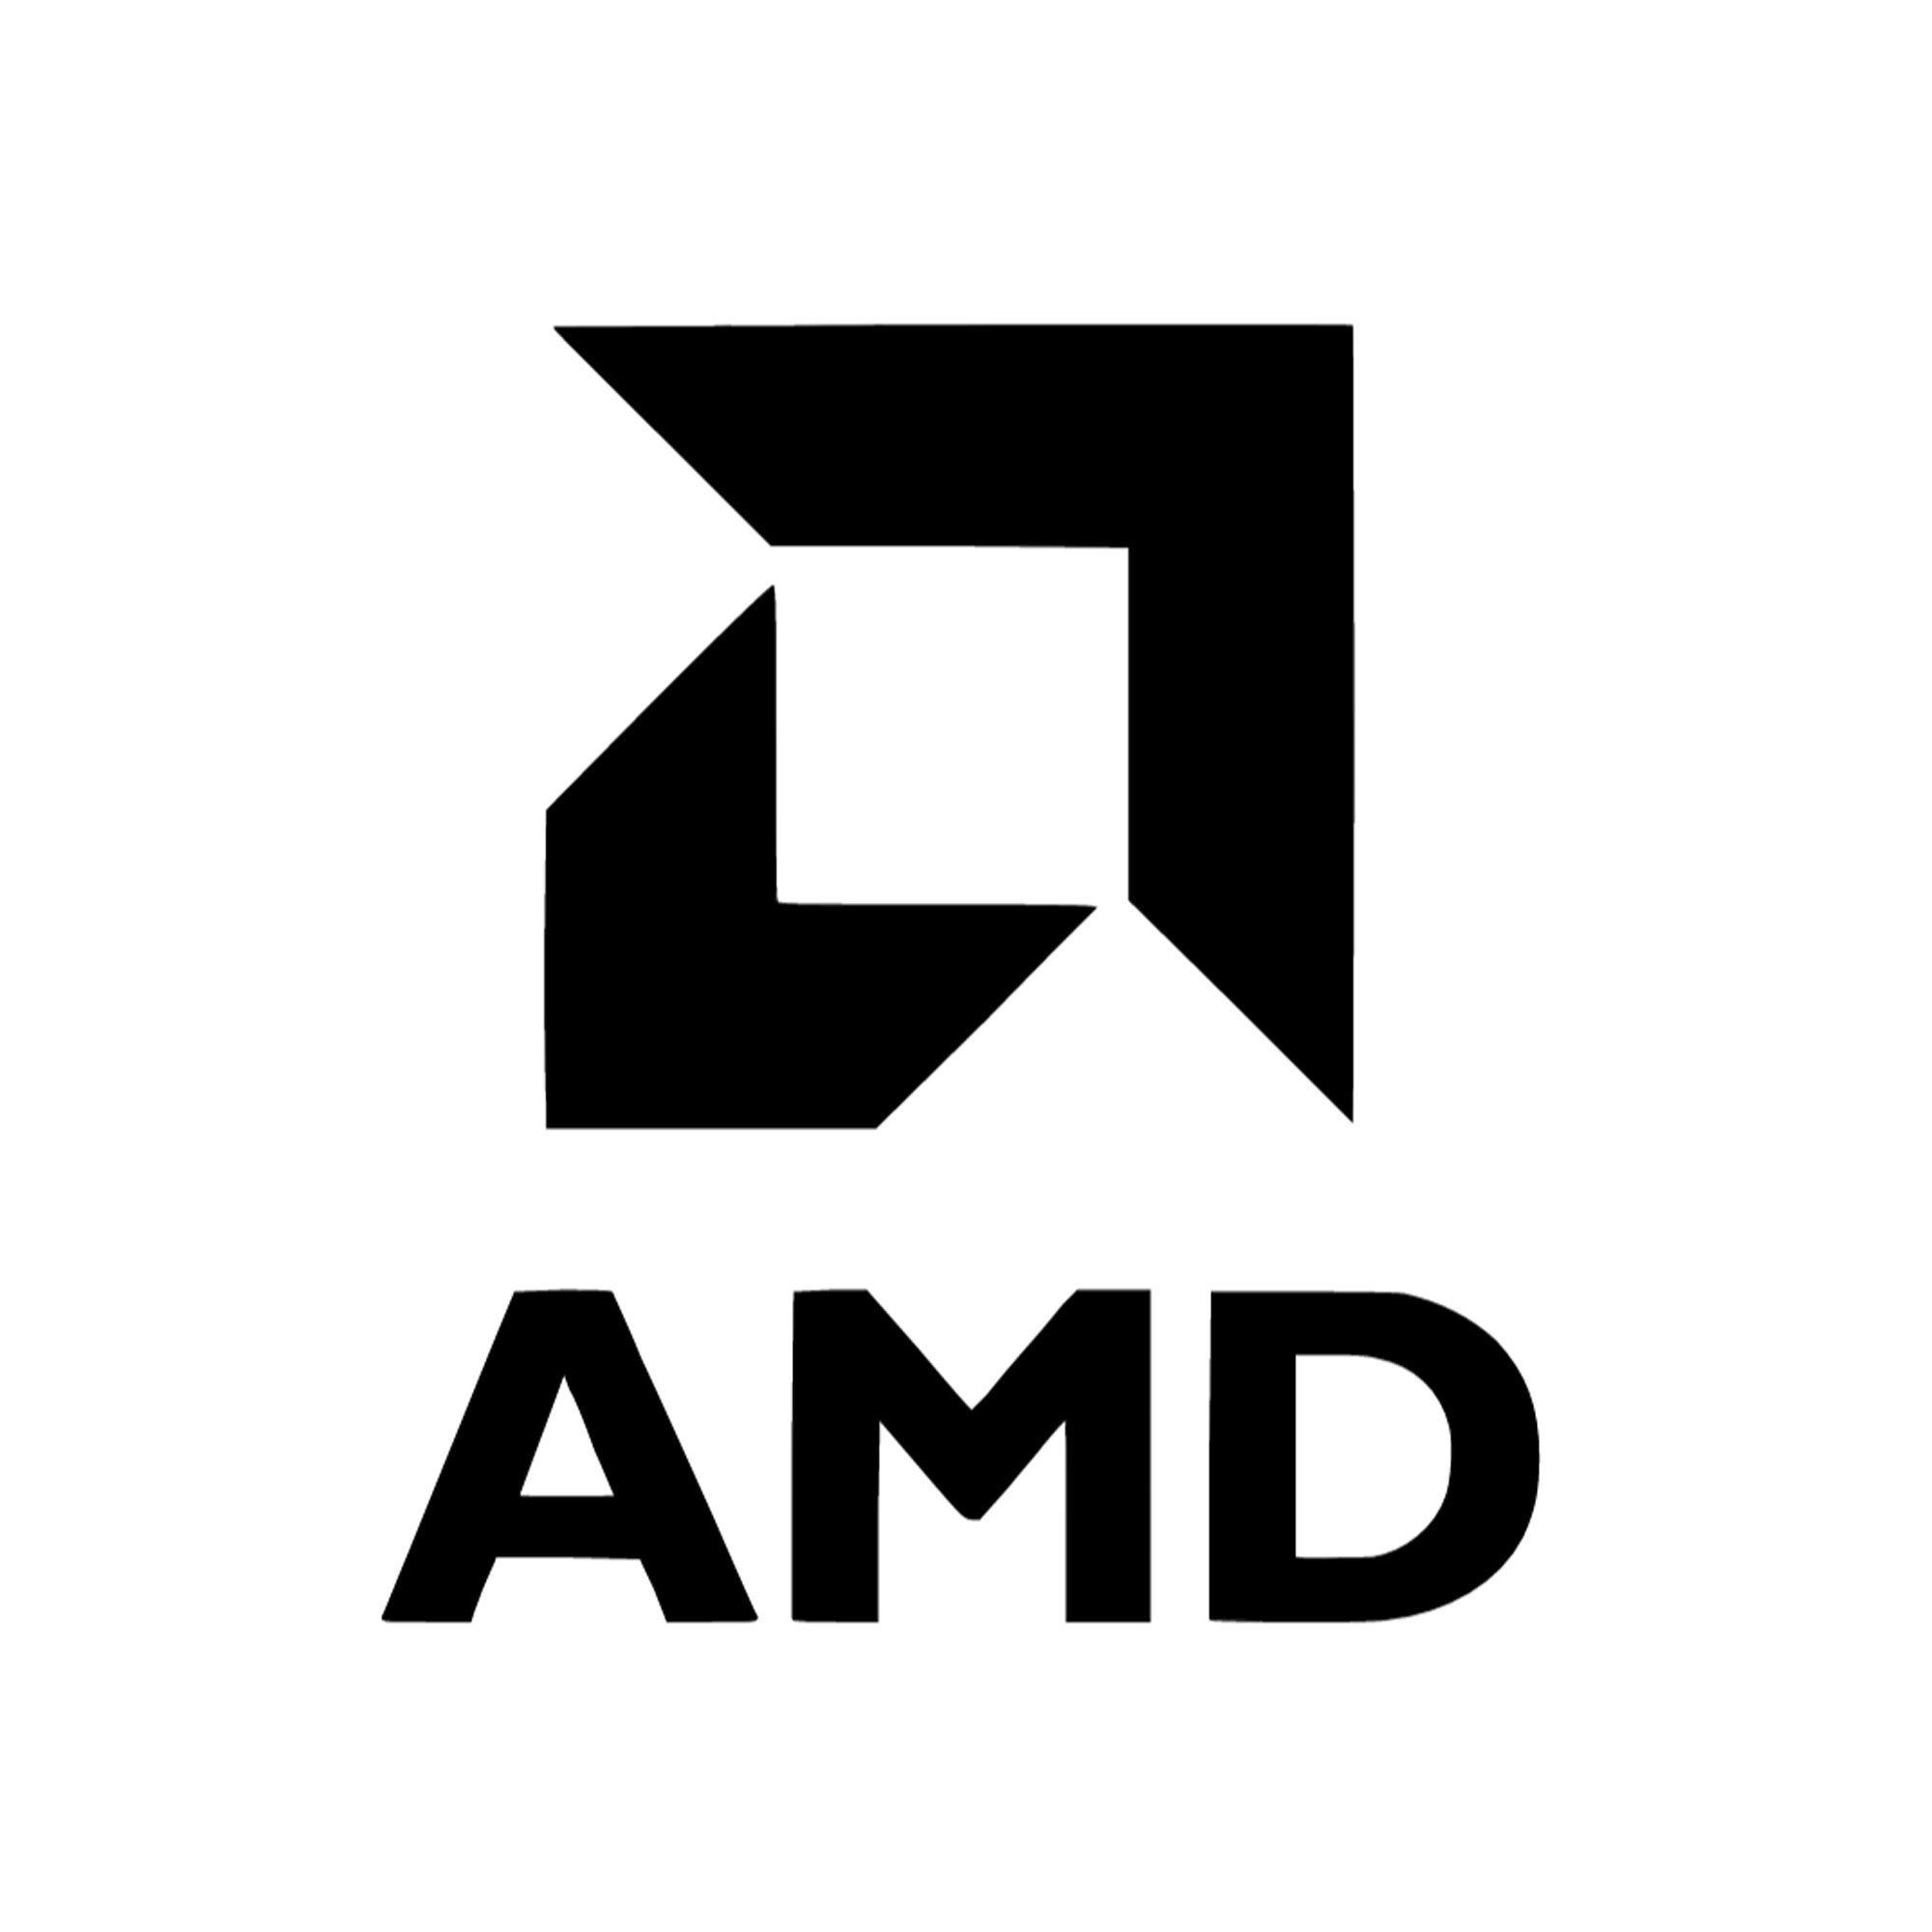 AMD ambitionne de multiplier par 30 l’efficacité énergétique de ses processeurs exécutant les phases d’apprentissage machine IA et les applications HPC d’ici 2025